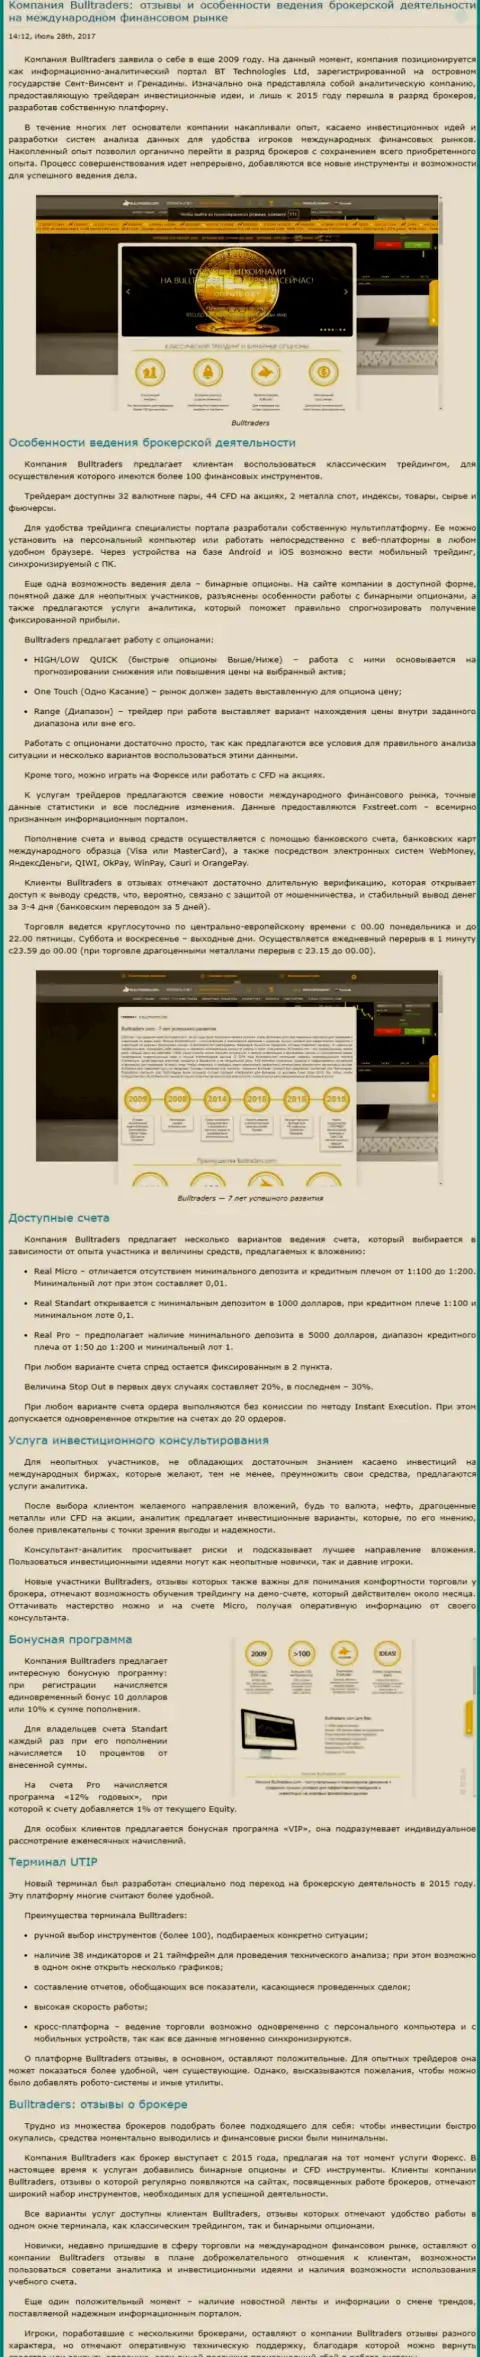 Обзор методов торговли ФОРЕКС компании БуллТрейдерс на мировой финансовой торговой площадке Форекс на веб-сайте besuccess ru